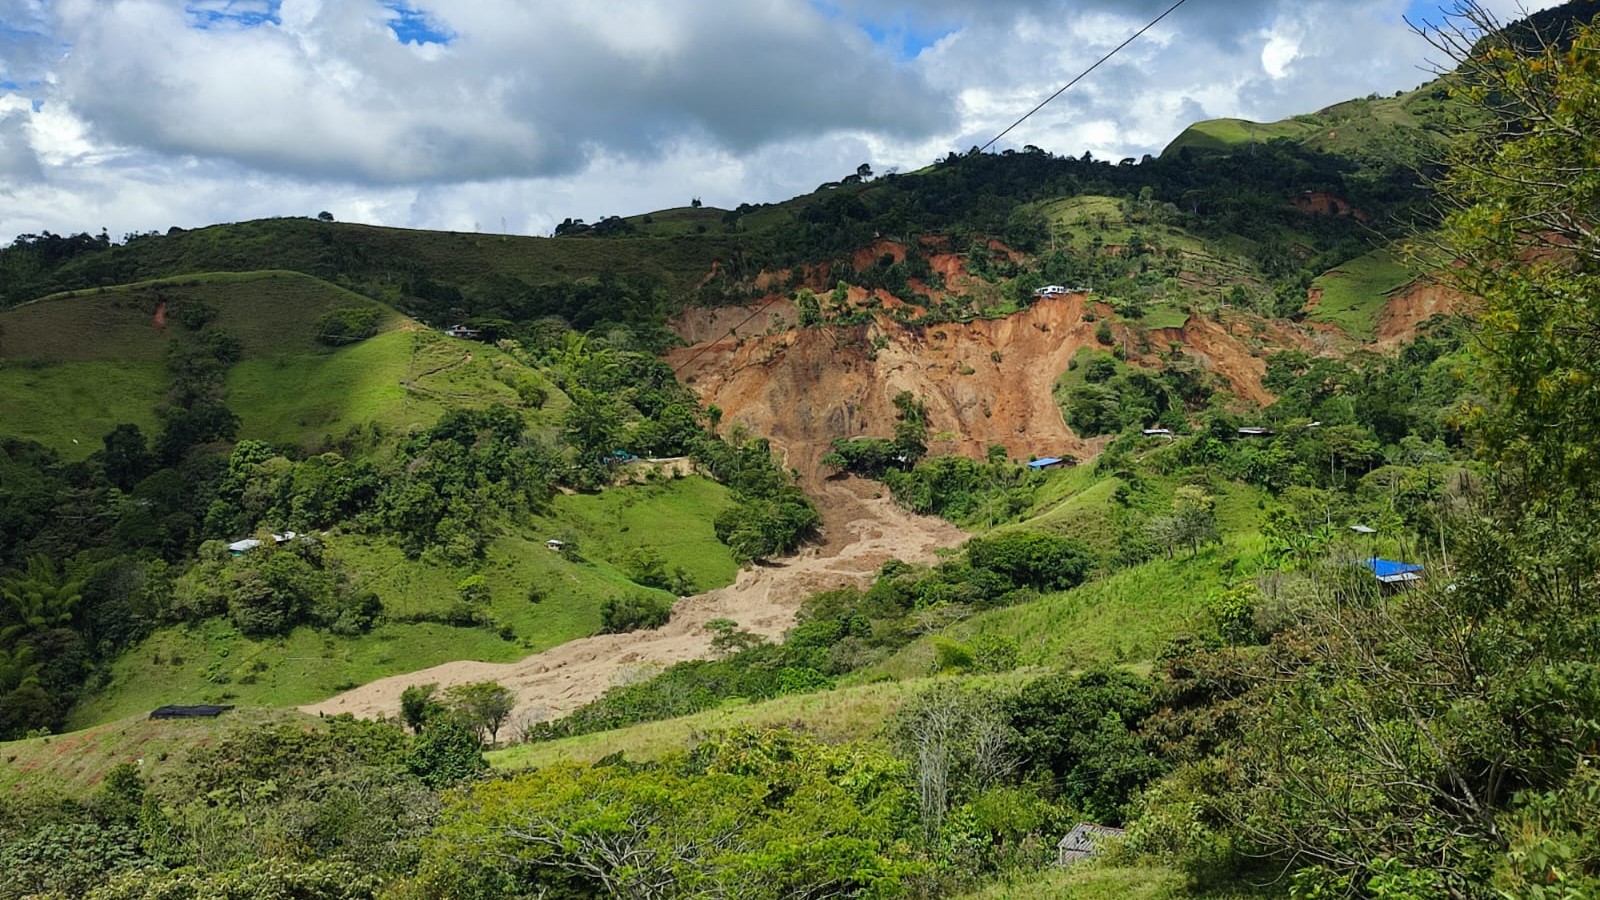 Imagen de arcvhio del deslizamientode tierra ocurrido en el municipio de Rosas, Cauca, el pasado 9 de enero del 2023. CRIC